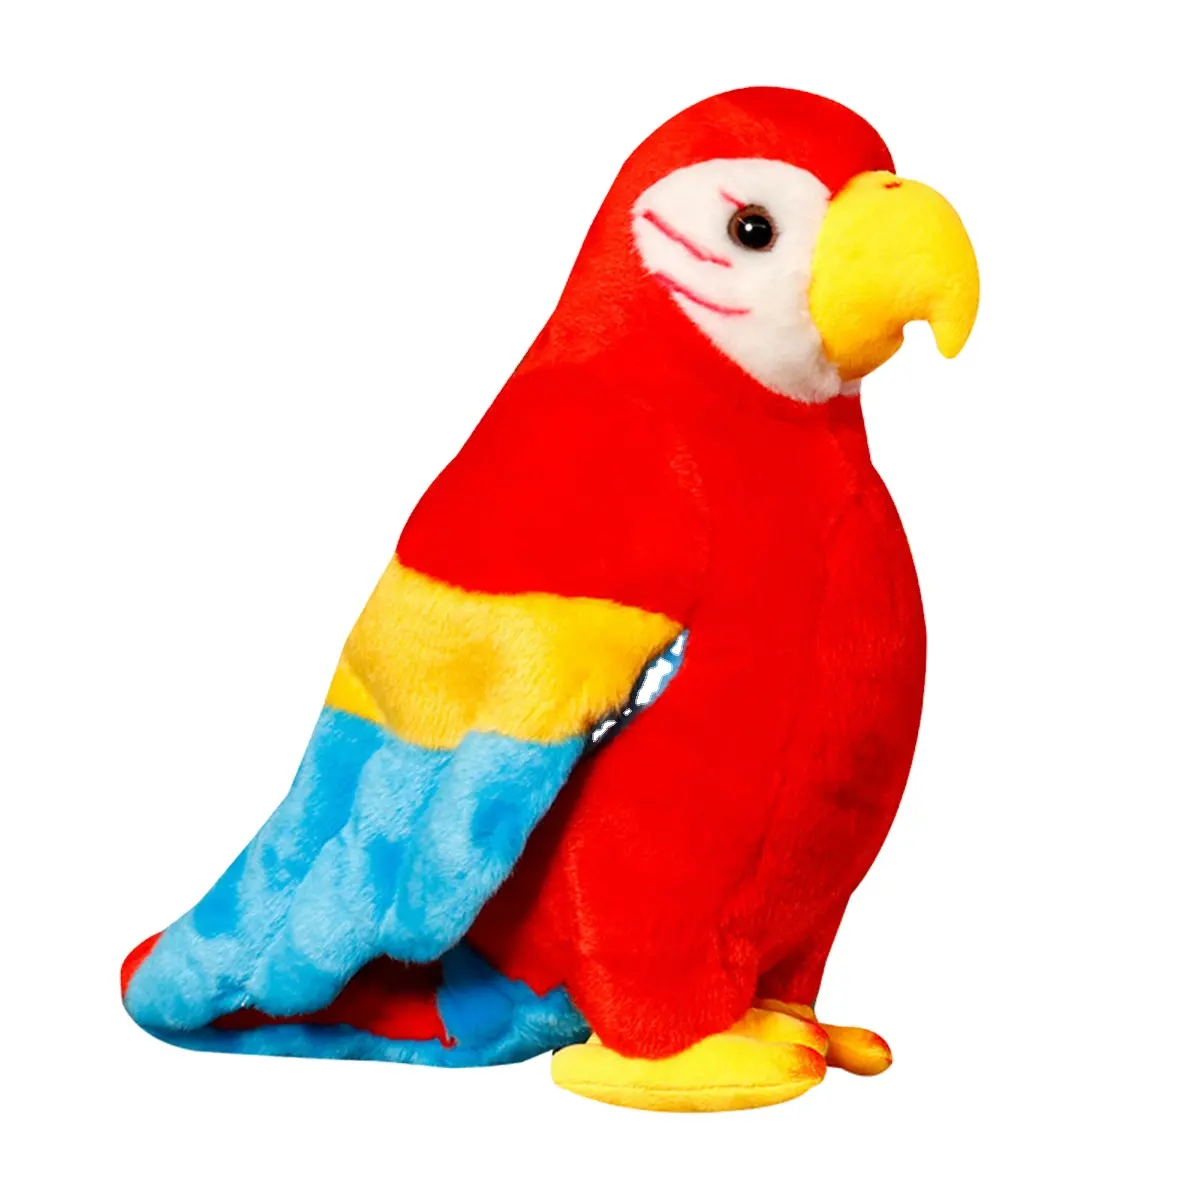 रंगीन पक्षी सिमुलेशन रंगीन तोता भरवां गुड़िया नरम पशु गुड़िया बच्चों के जन्मदिन समारोह उपहार के लिए बेबी खिलौने